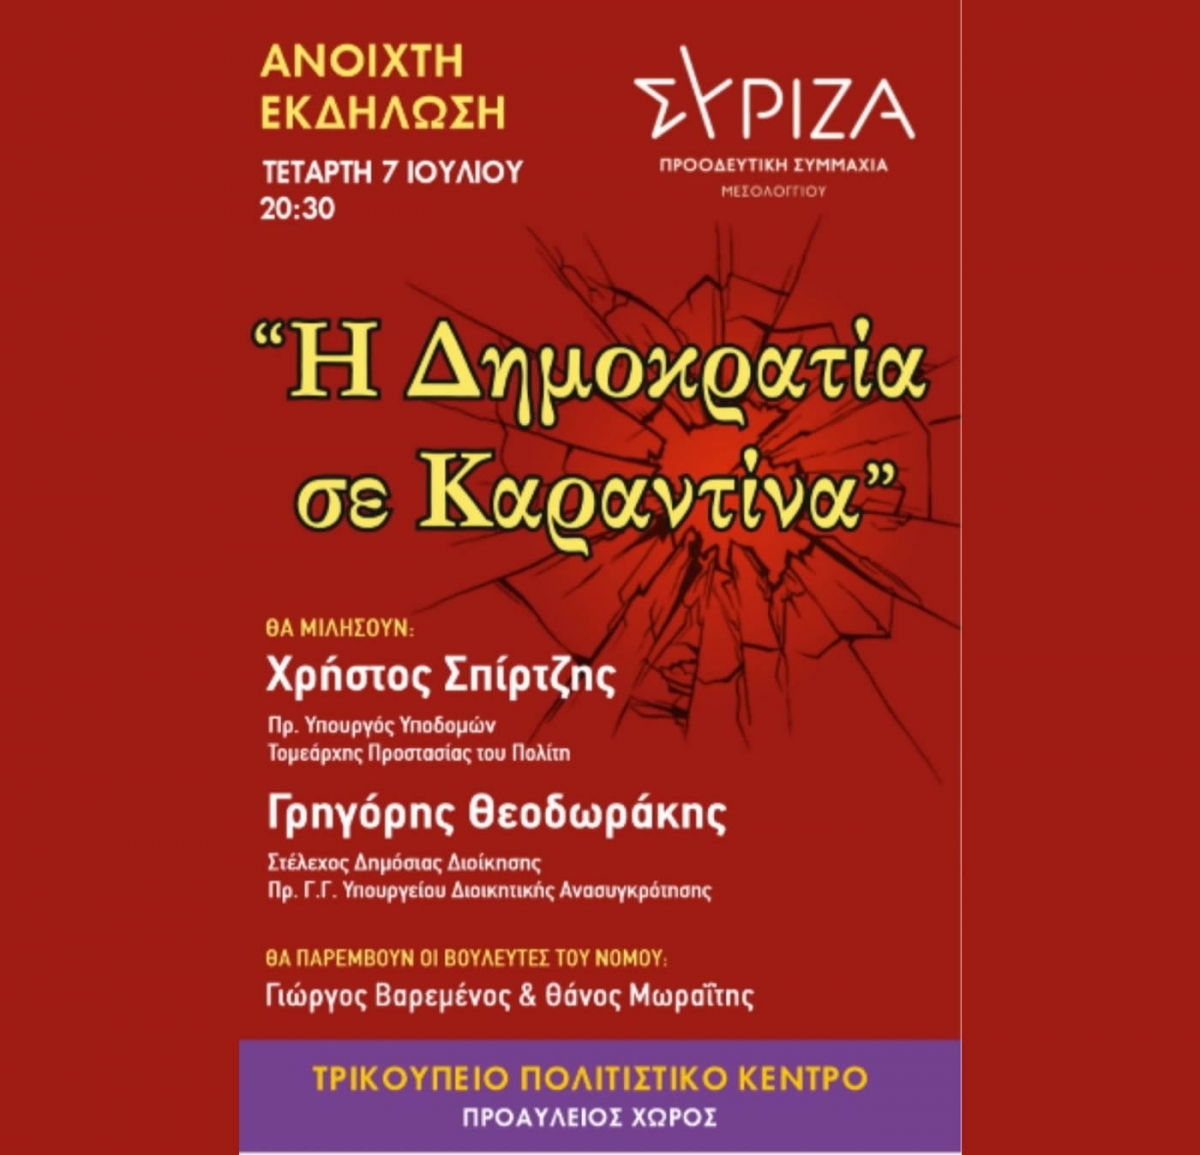 ΣΥΡΙΖΑ - ΠΣ Μεσολογγίου: Ανοικτή εκδήλωση στο Μεσολόγγι με θέμα &quot;Η Δημοκρατία σε Καραντίνα&quot; (Τετ 7/7/2021 20:30)